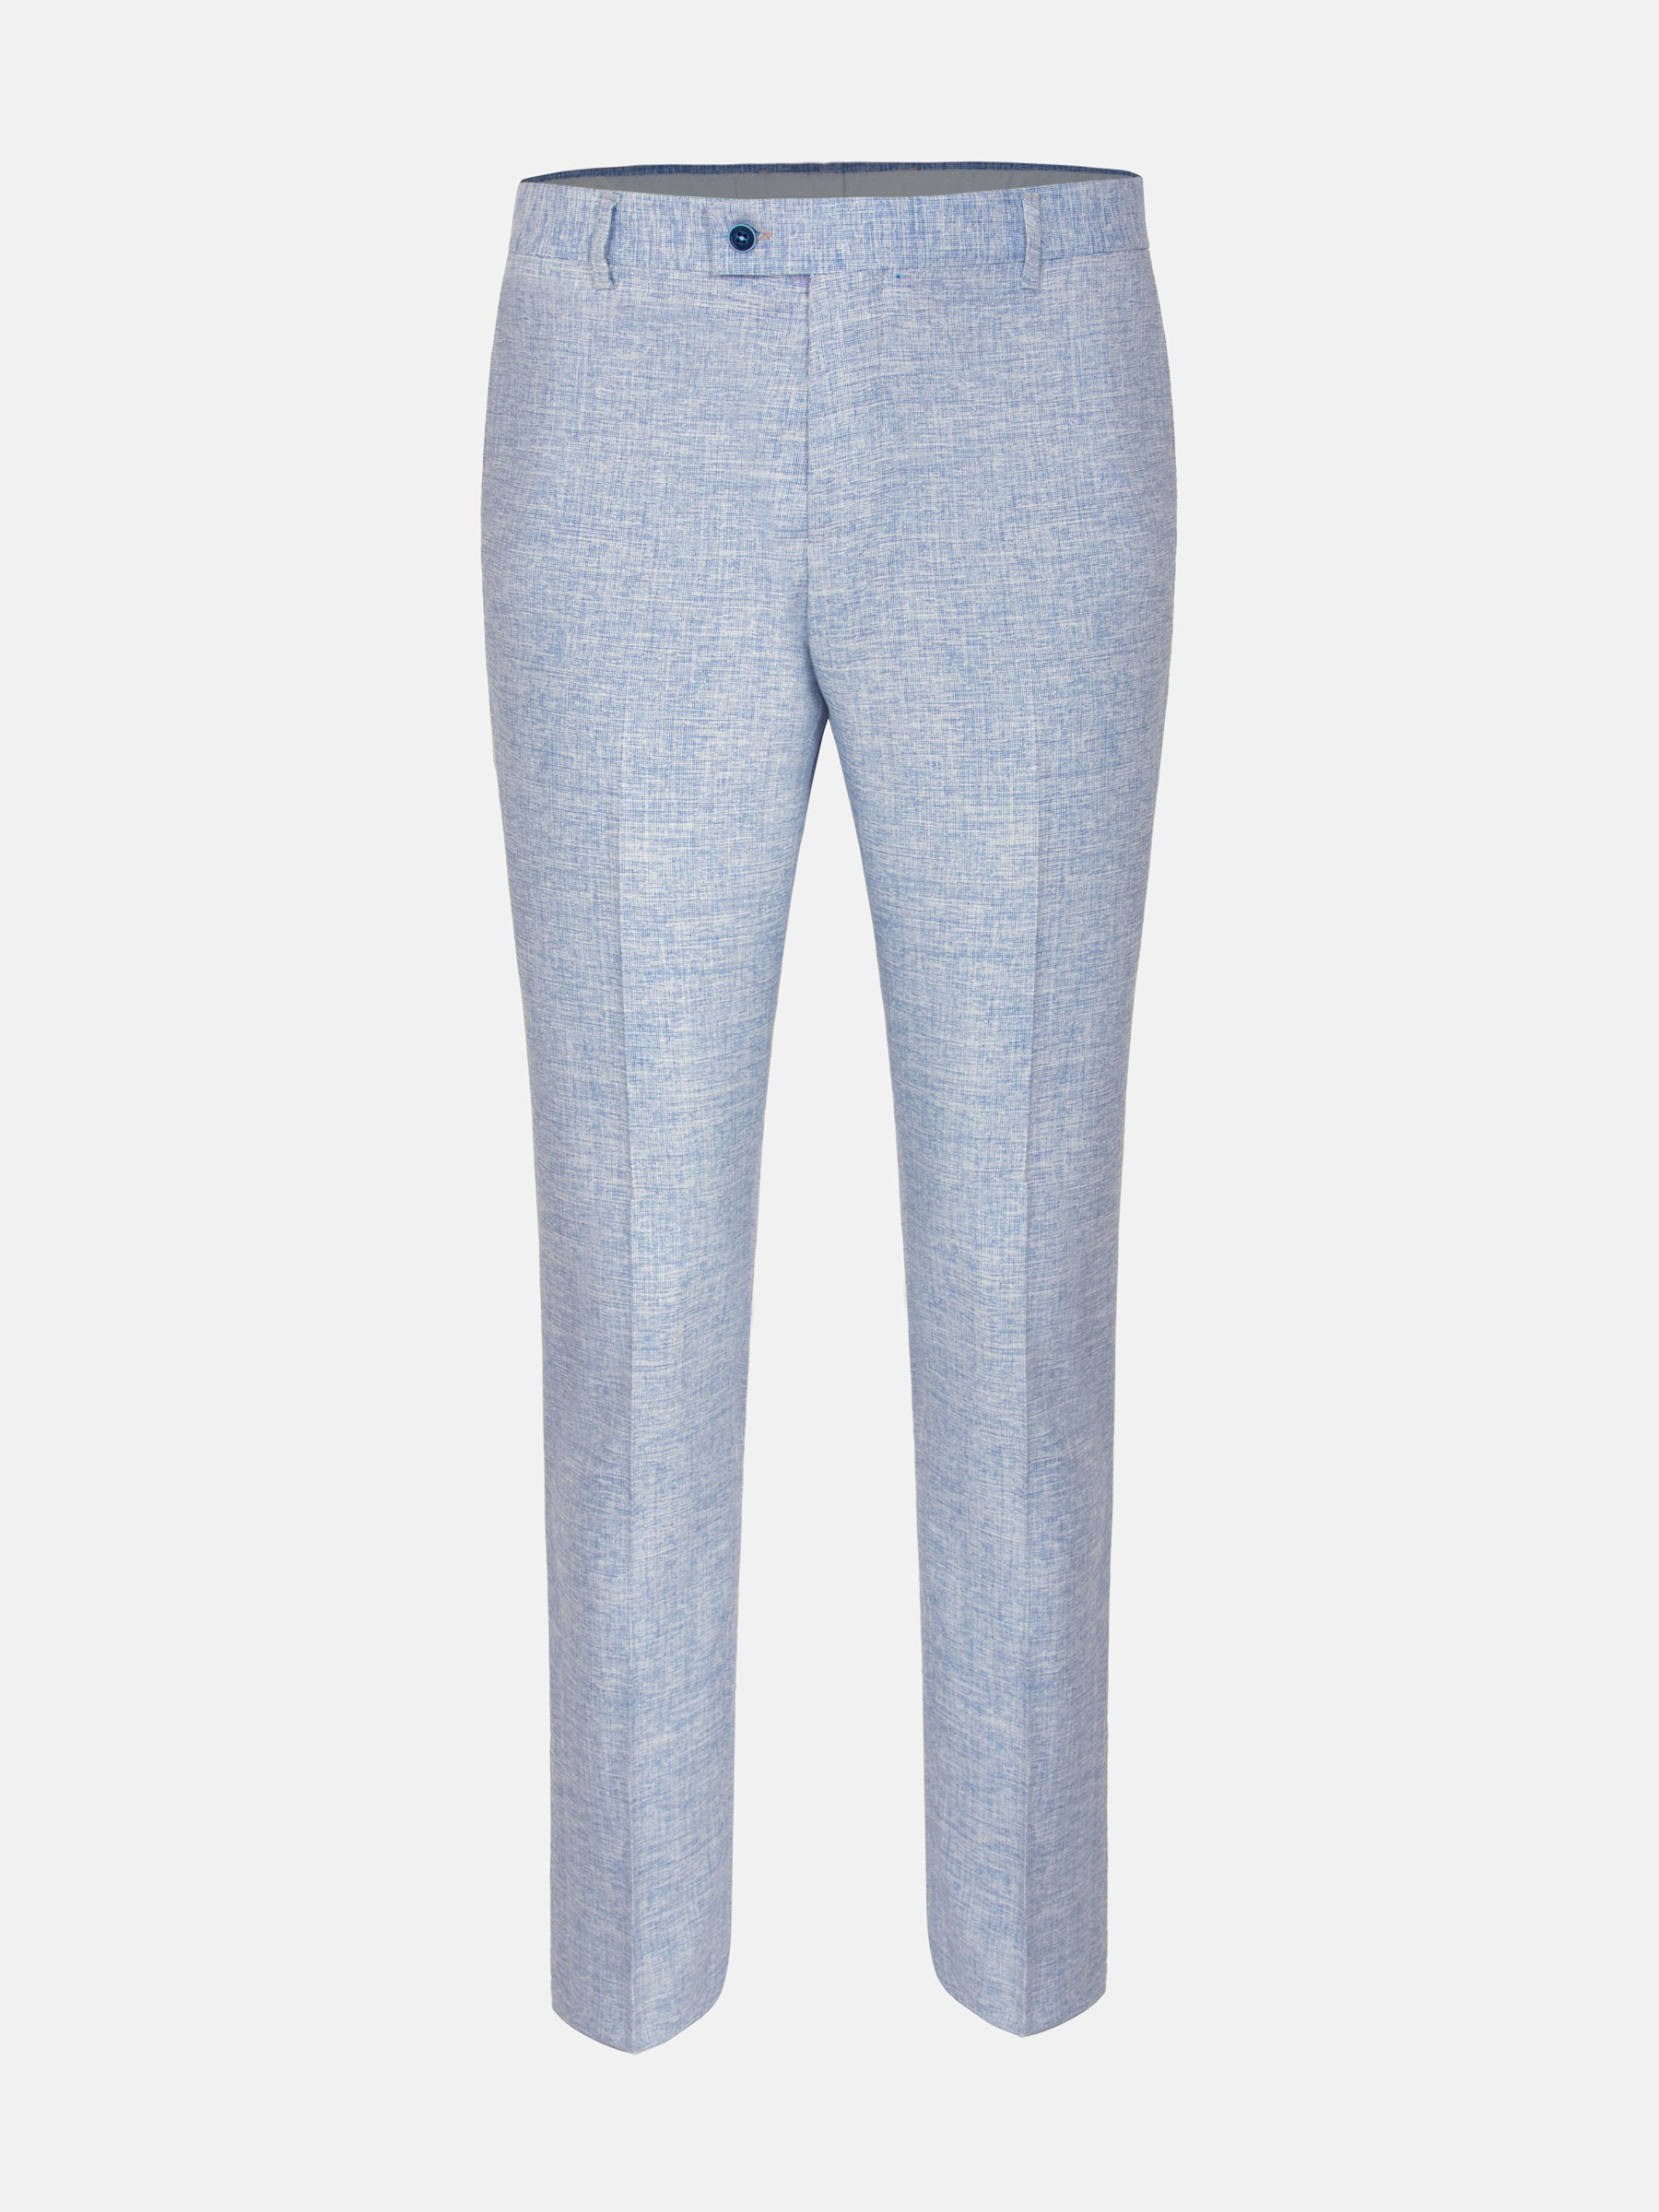 WAM Denim Suit Pantalon 70112 Blue-